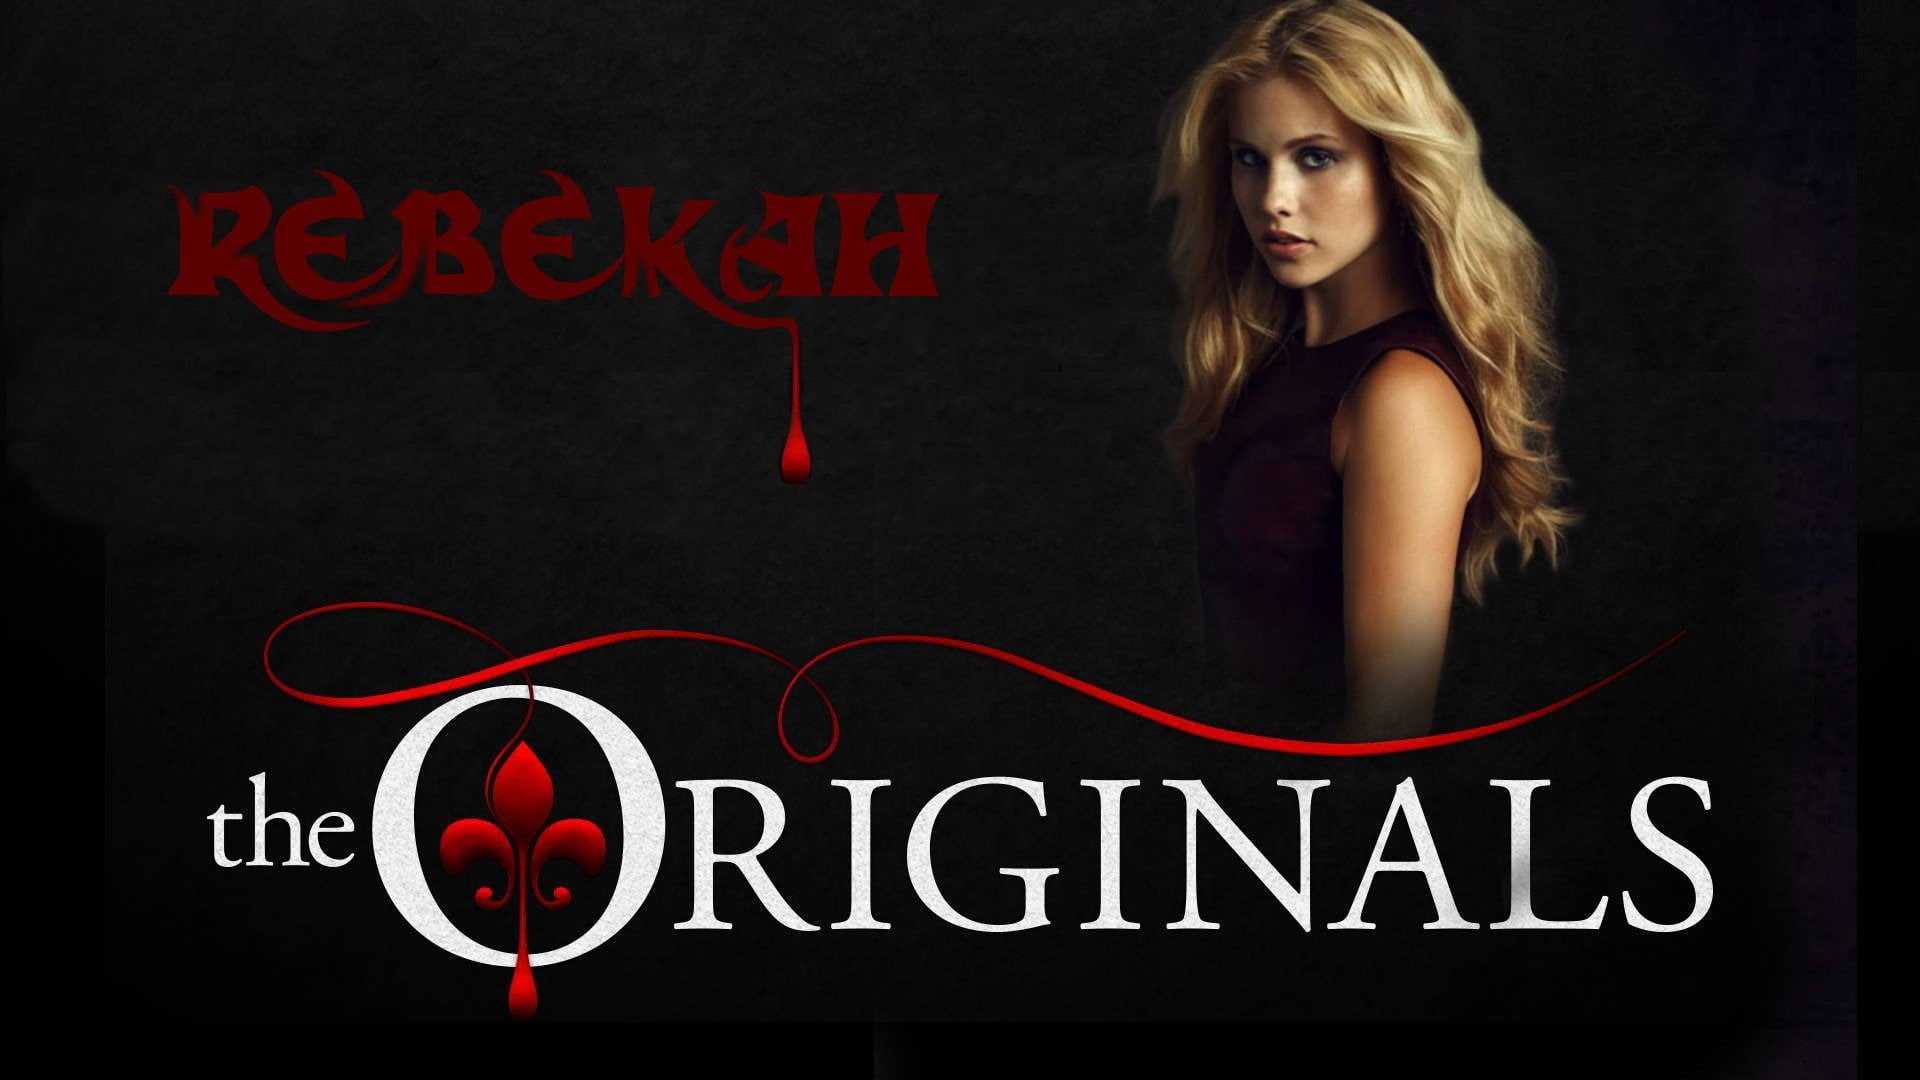 Claire Holt, rebekah, The Originals